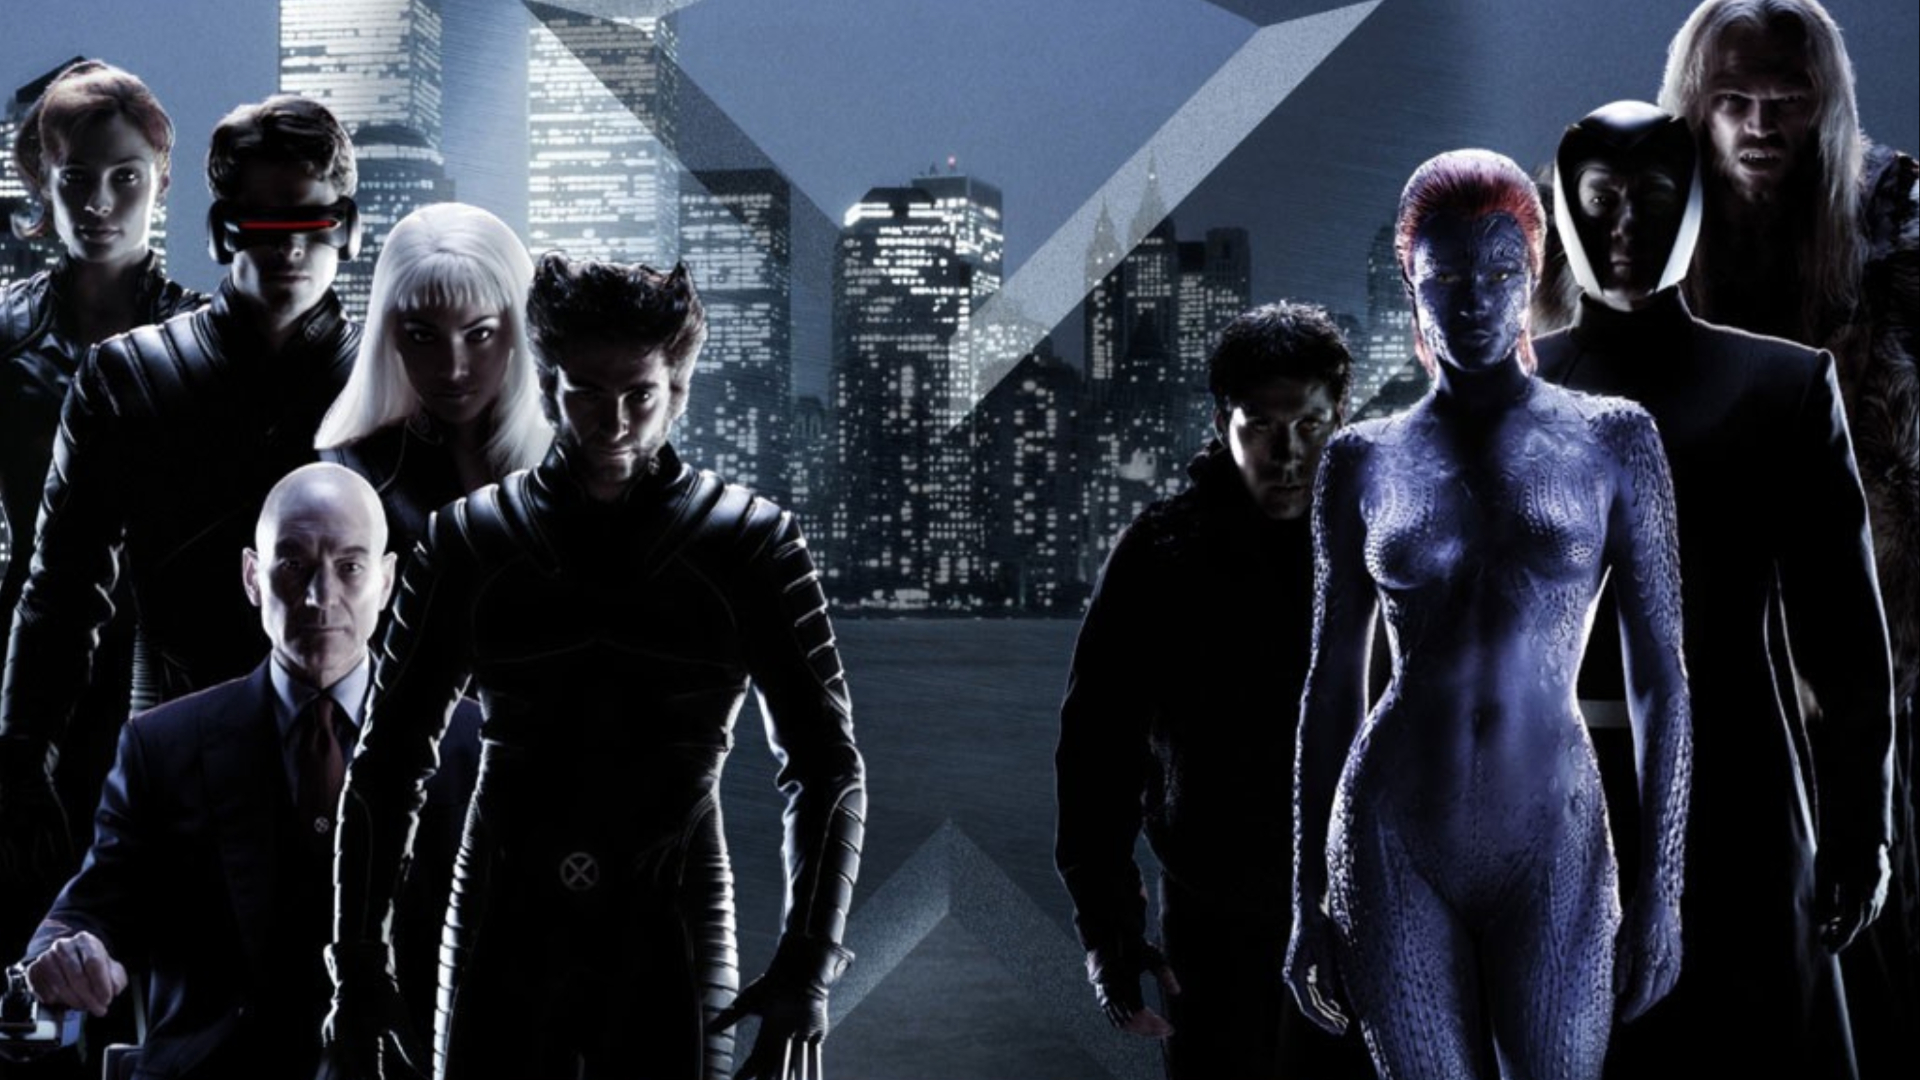 Pôster de "X-Men" (2000) com os mutantes alinhados com Xavier e Magneto.